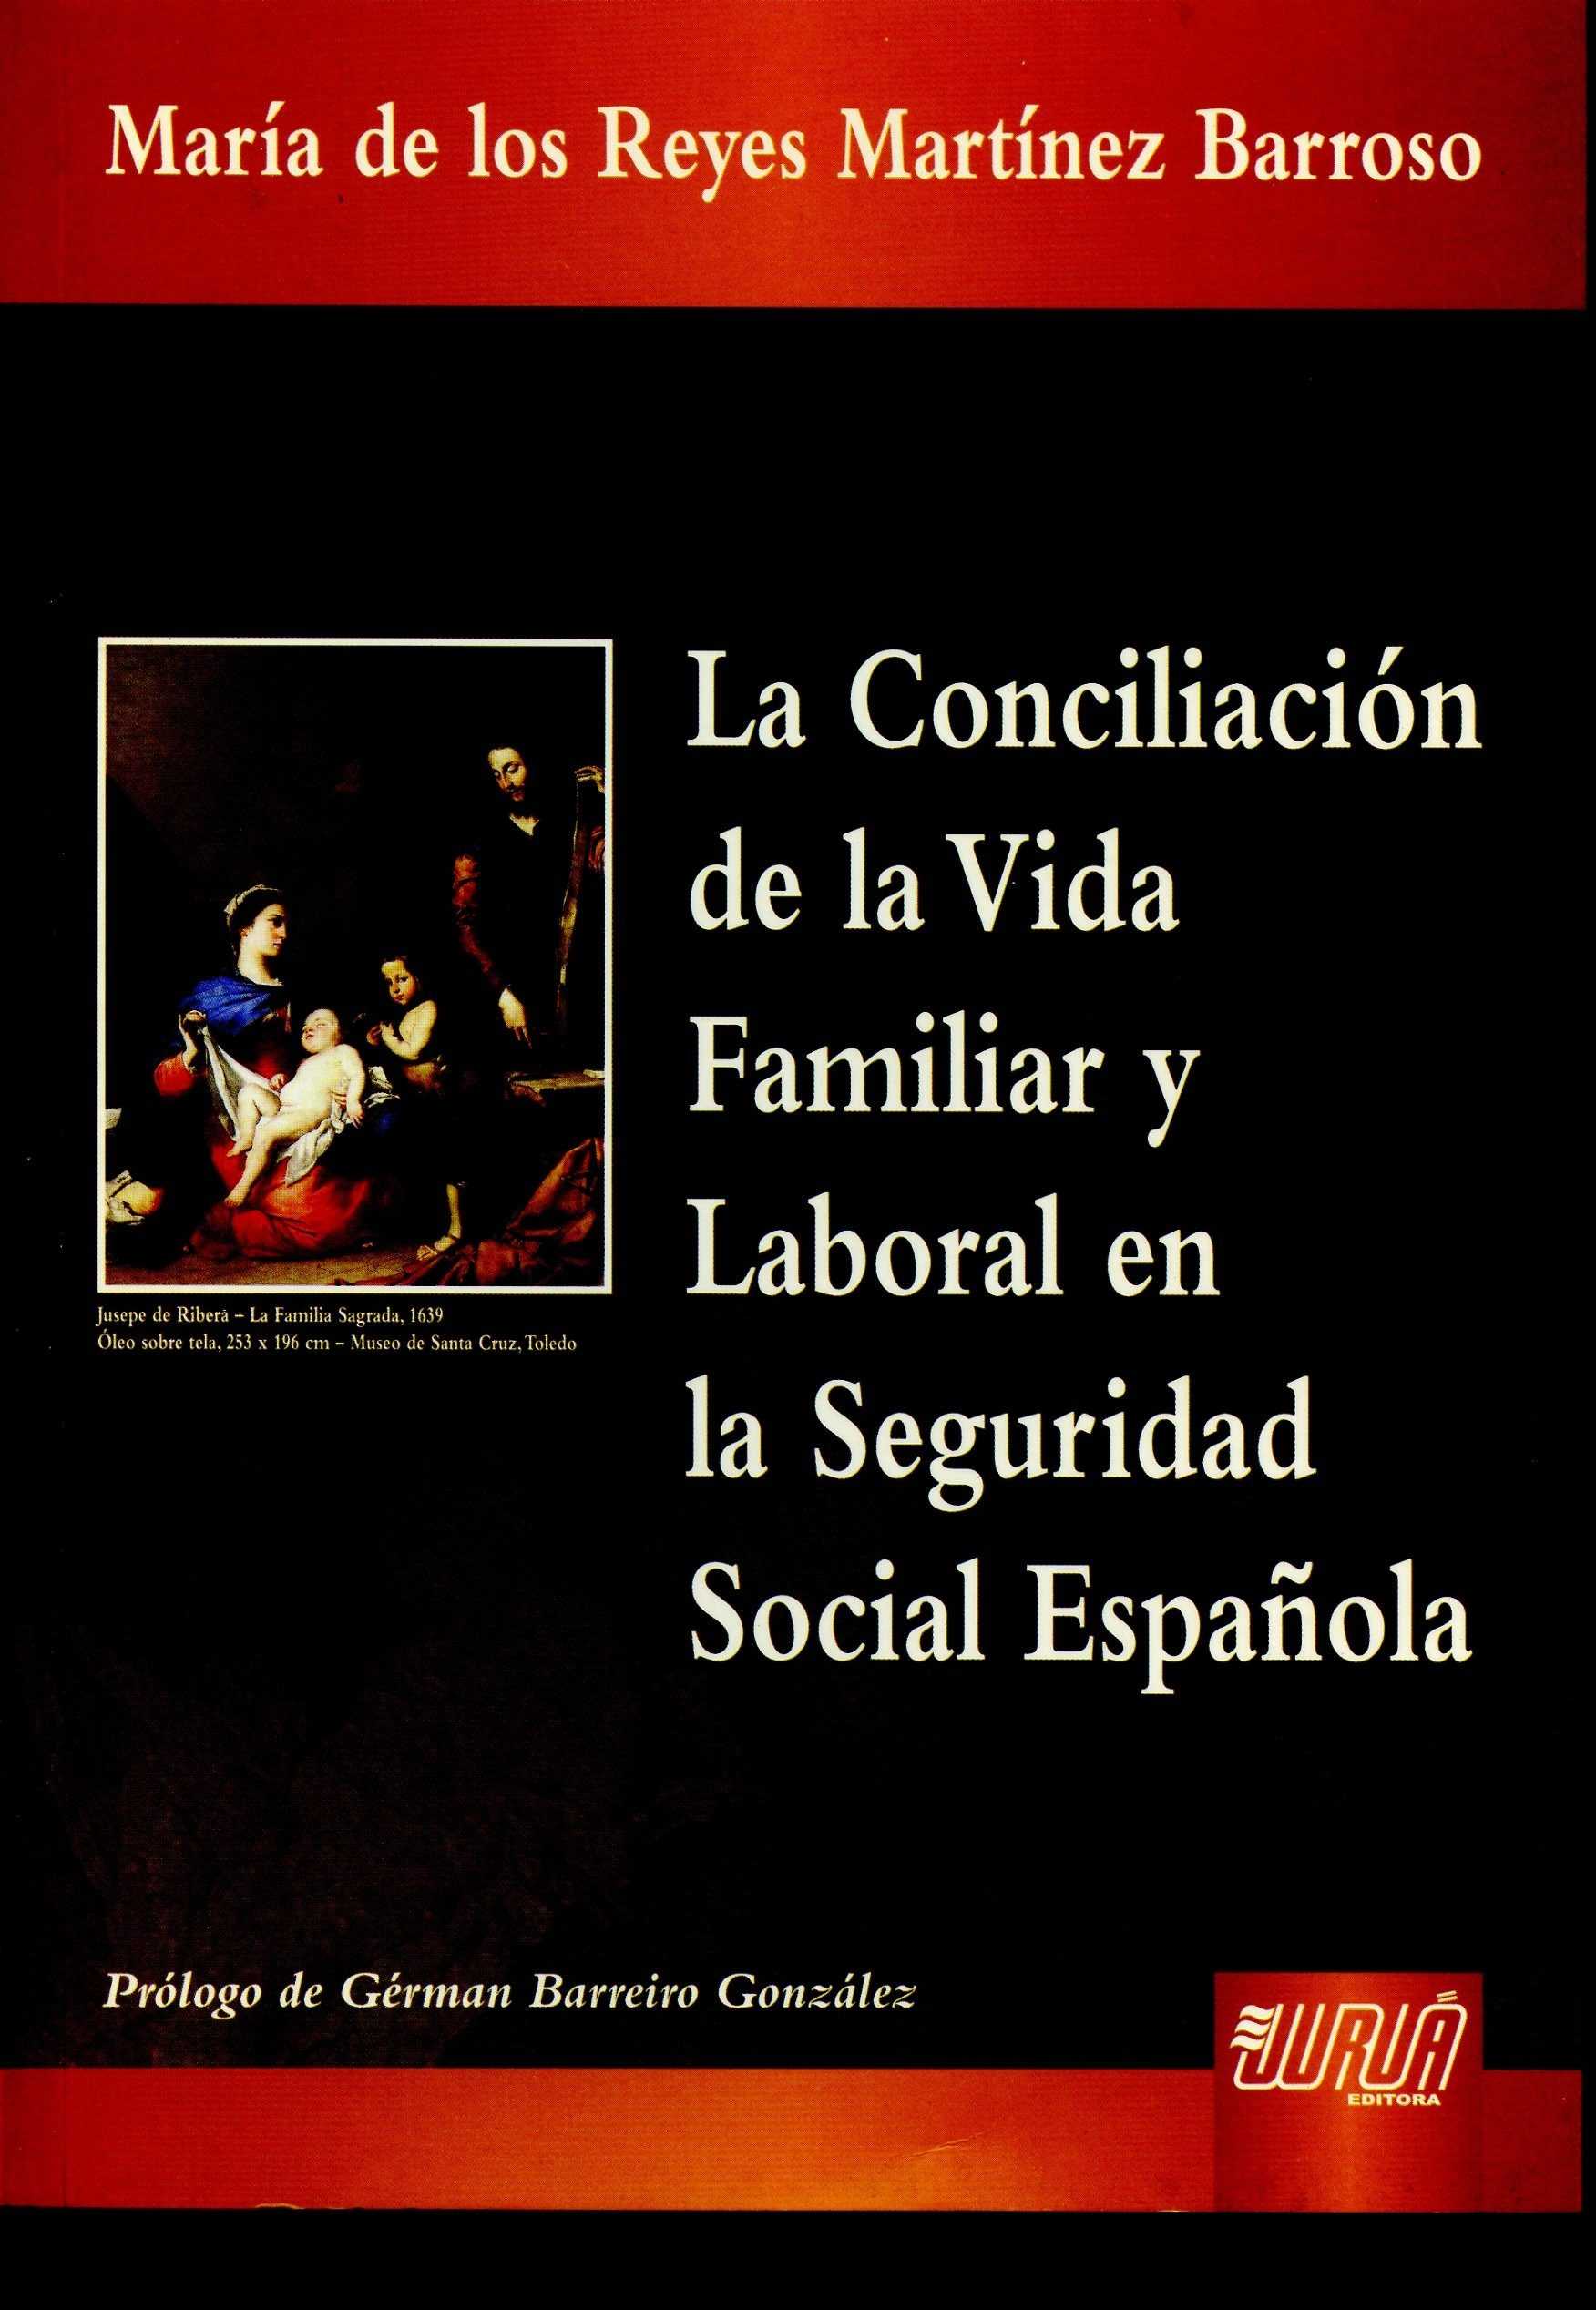 La conciliación de la vida familiar y laboral en la Seguridad Social Española. 9789898312396